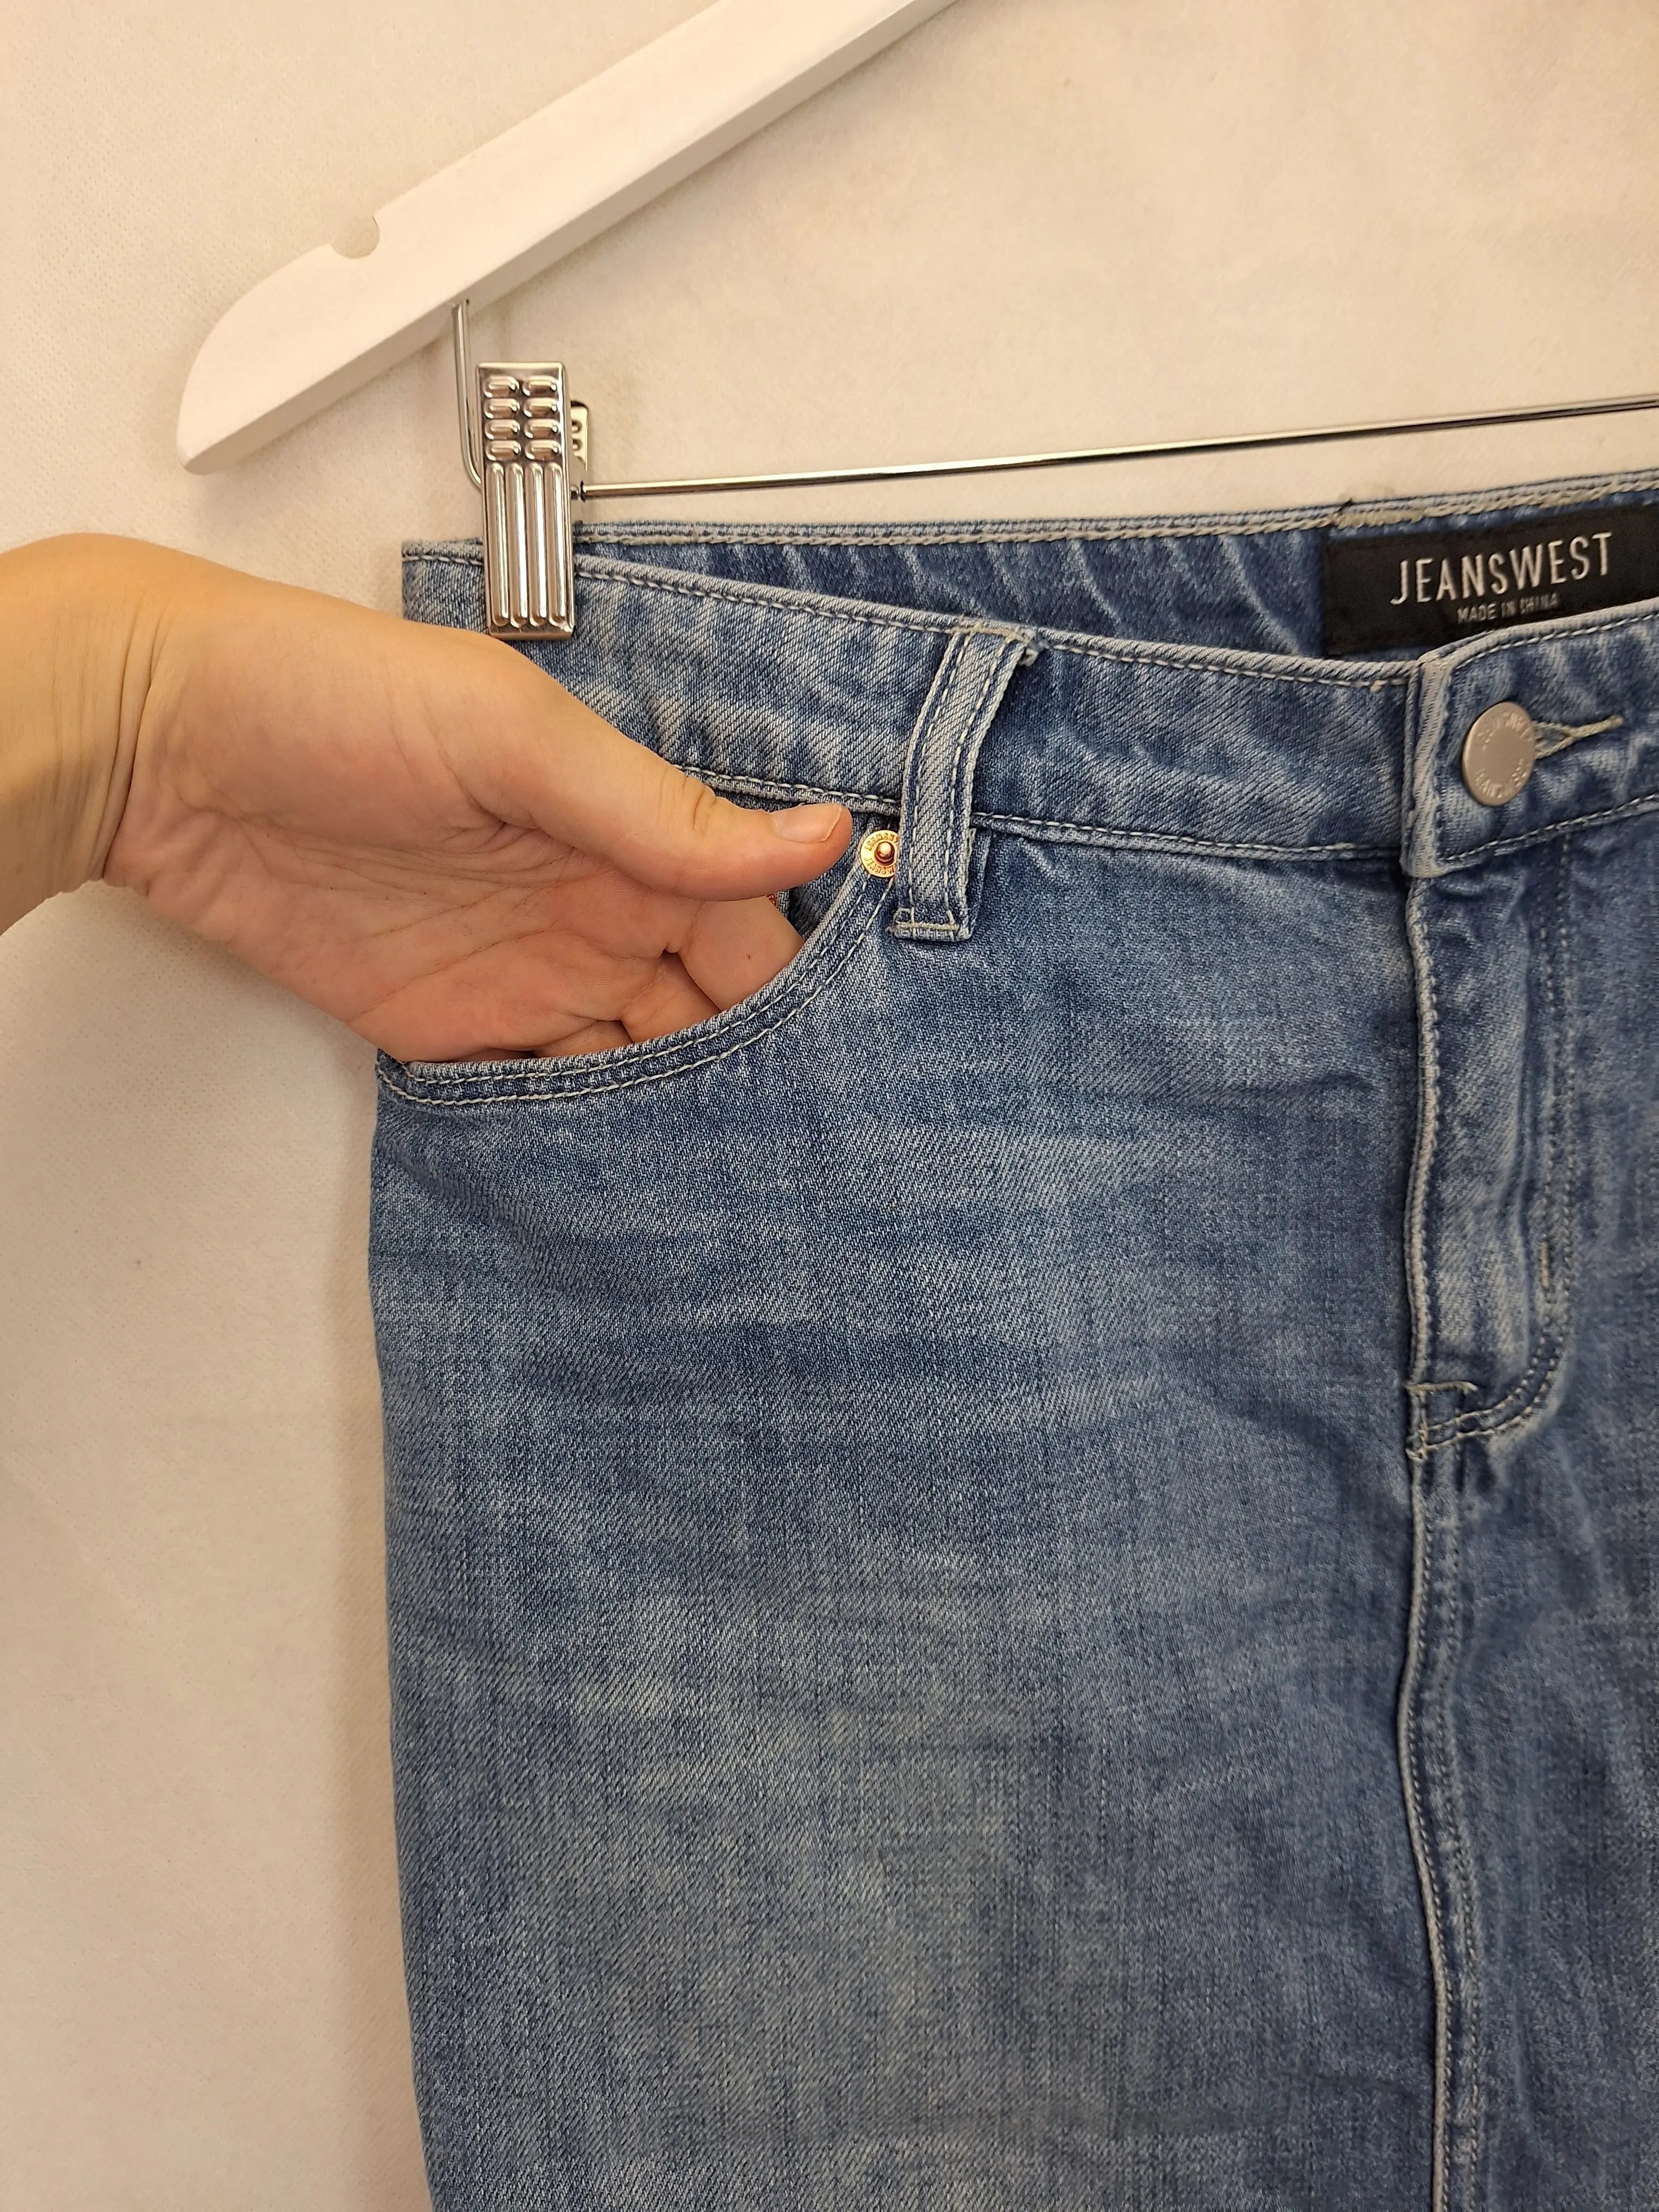 Jeanswest Stretch Denim Skirt Womens Size 8 Black Grey Pockets Logo Zip  Close | eBay